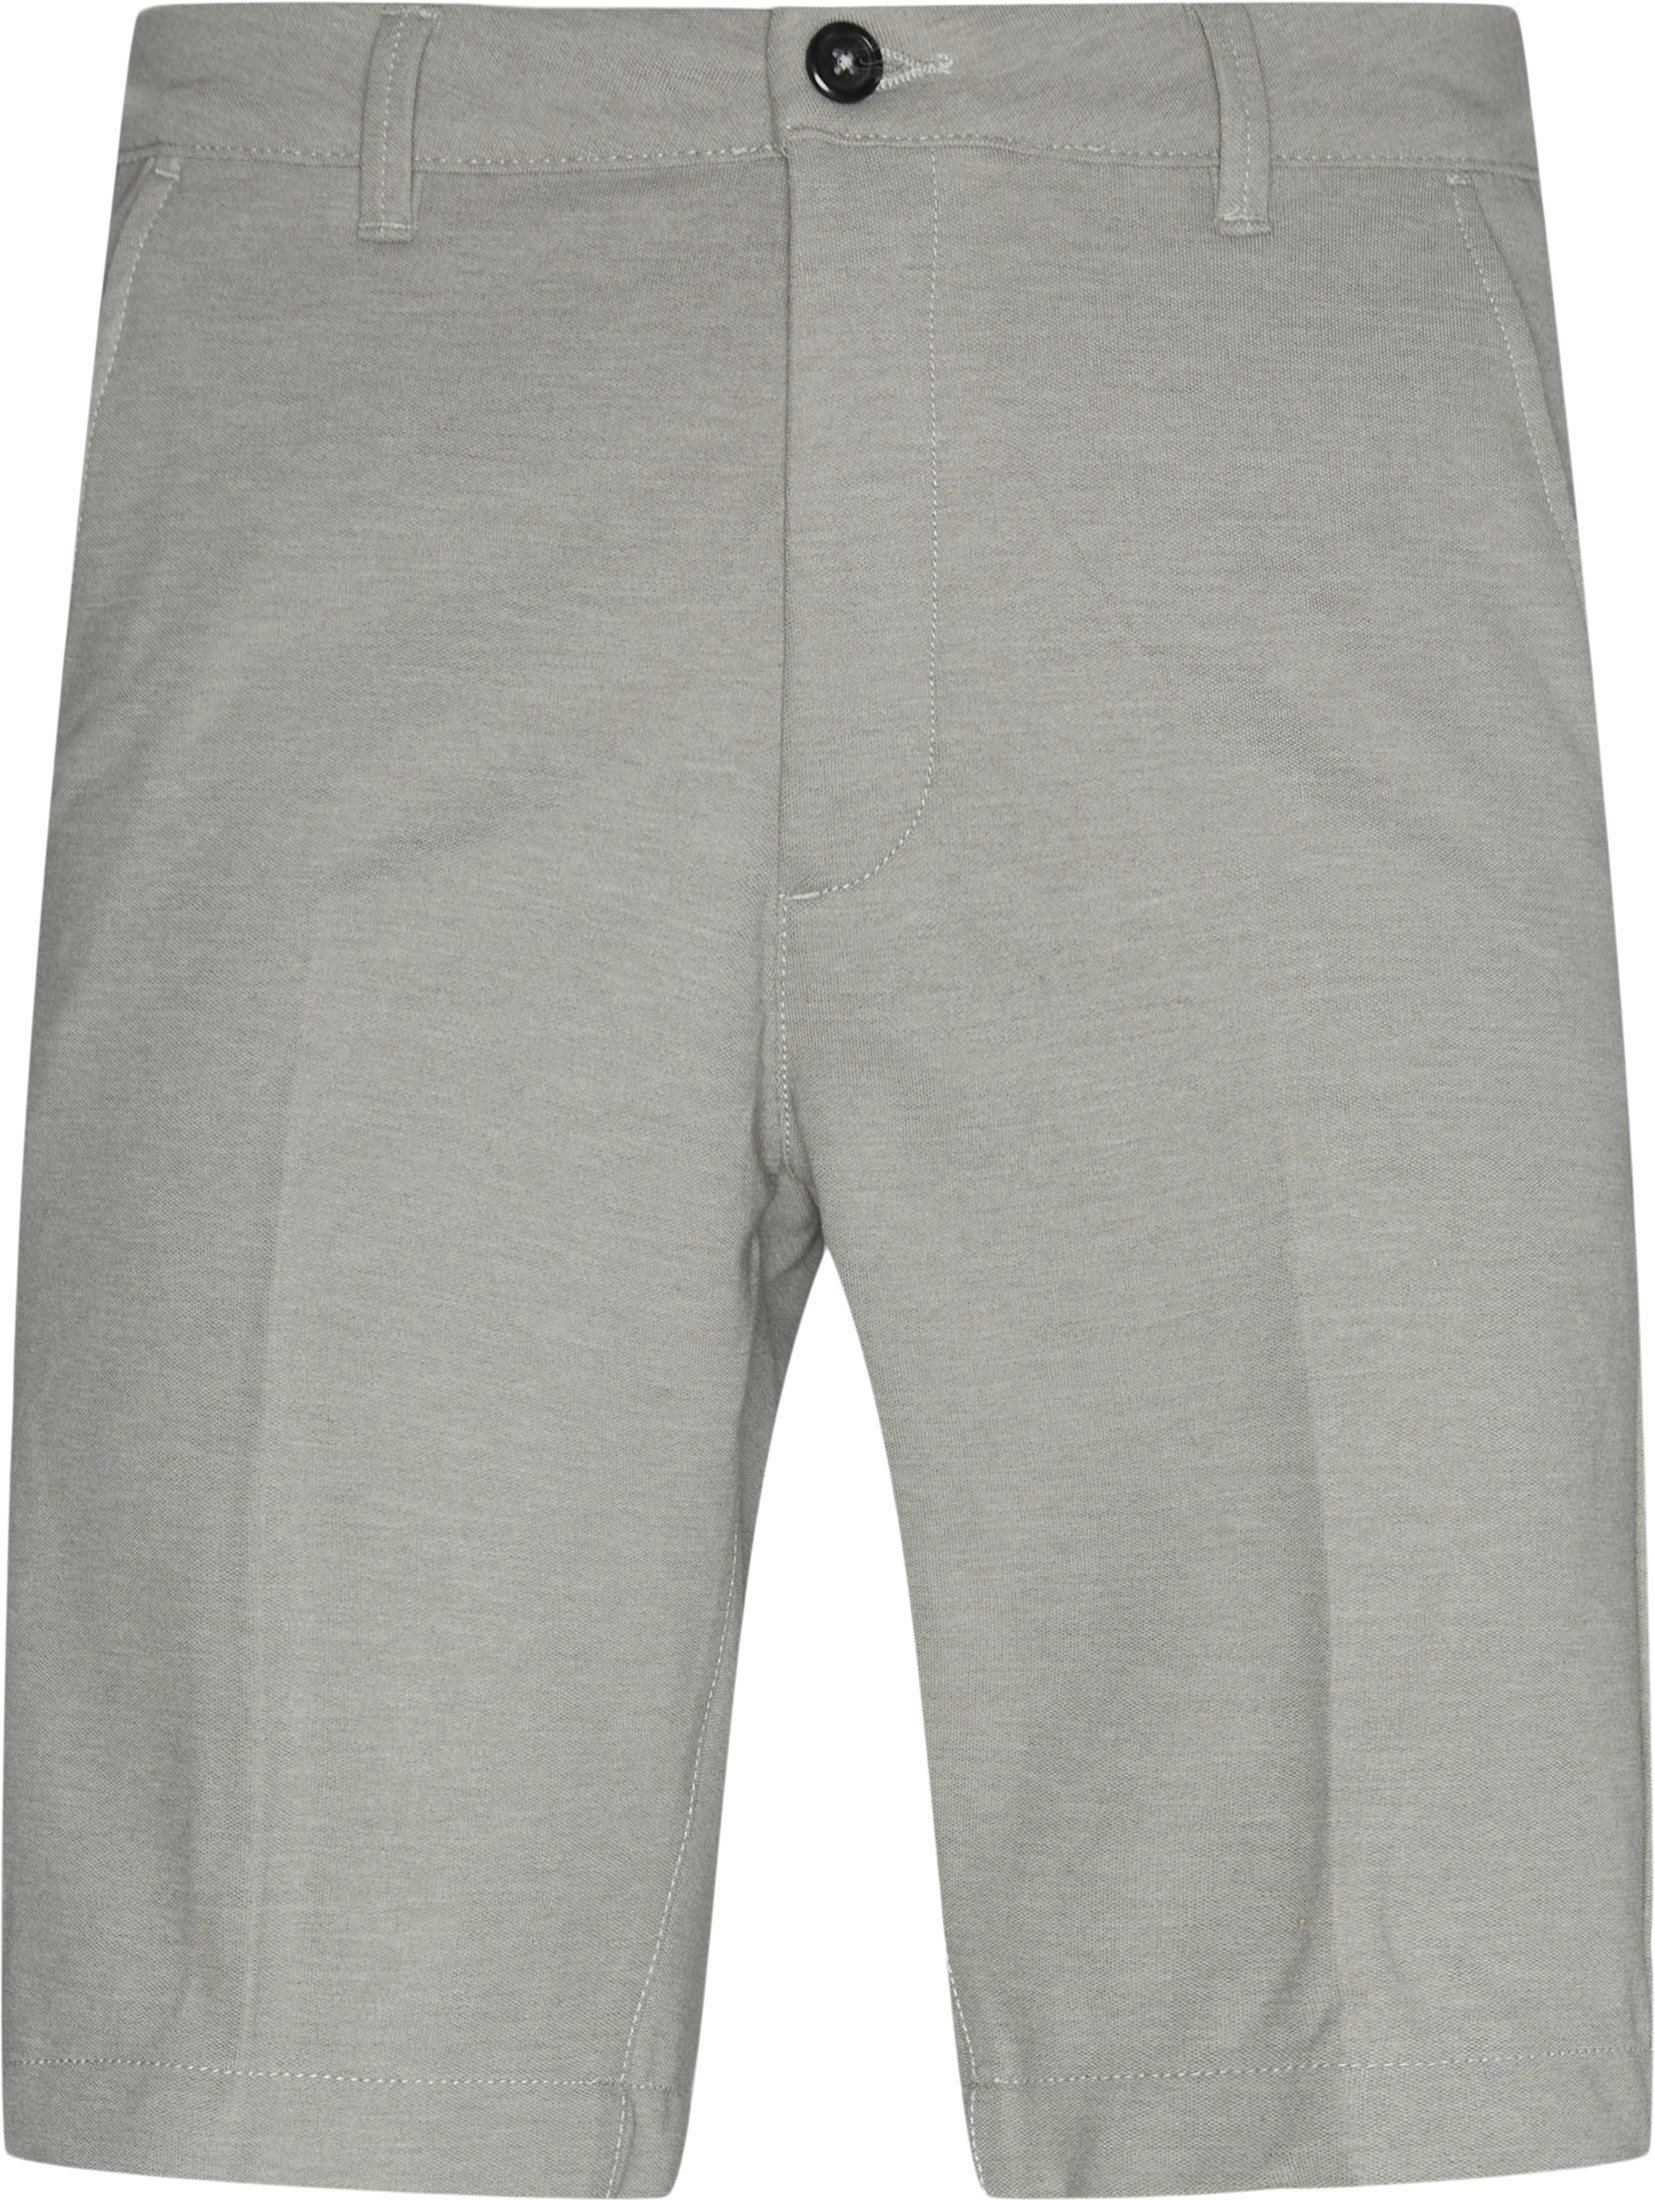 Florin shorts - Shorts - Regular fit - Grå